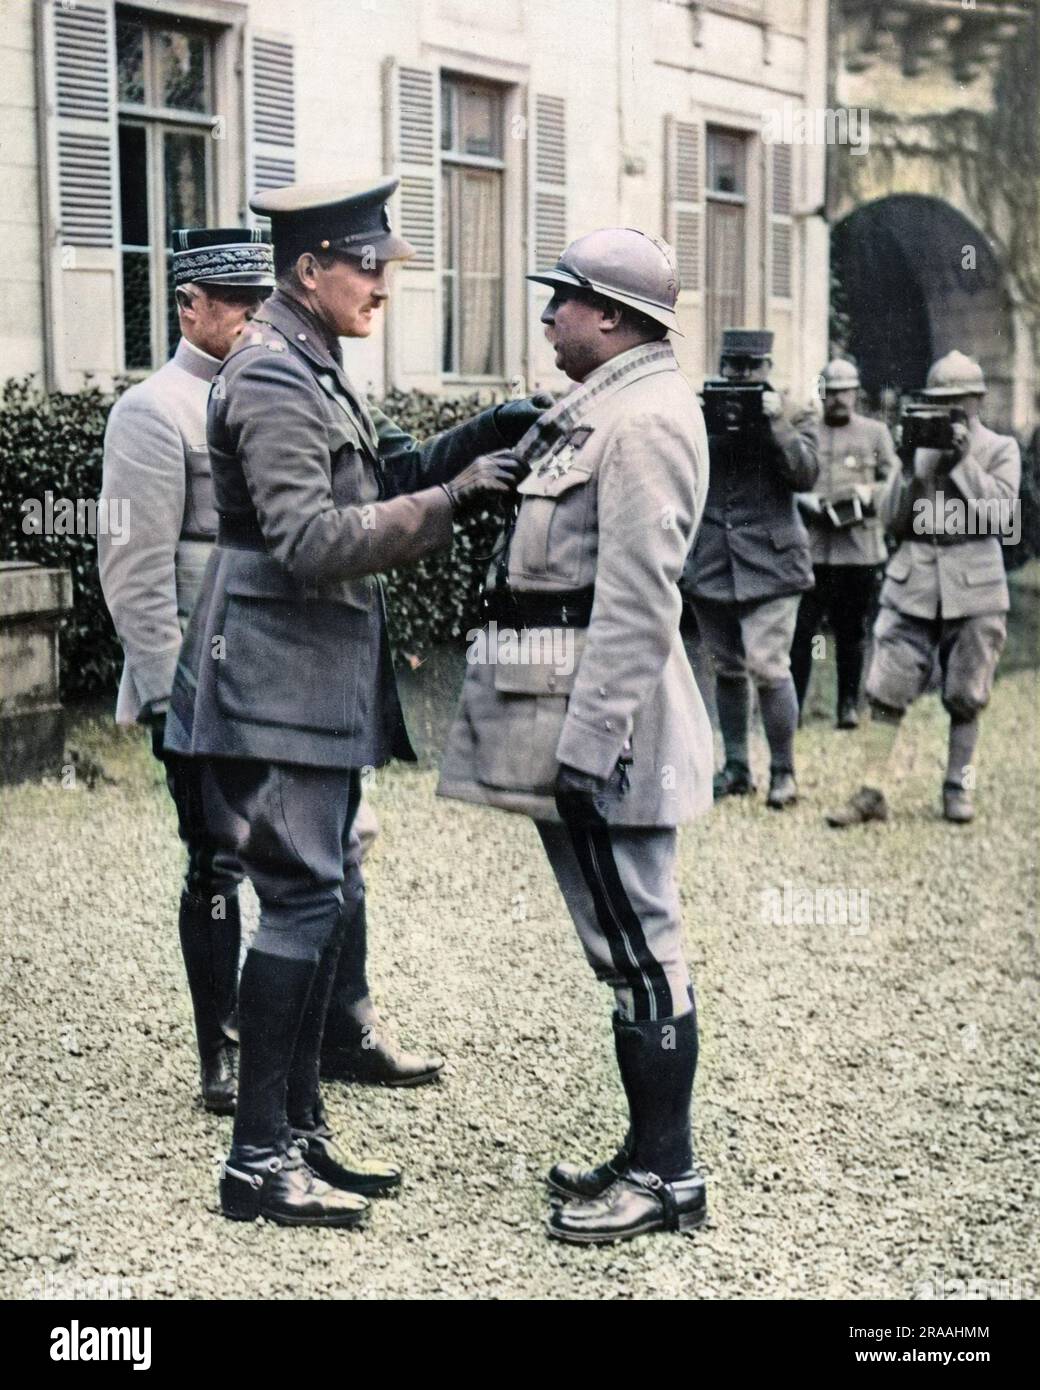 Arthur, principe di Connaught, presenta una decorazione militare a un generale francese sul fronte occidentale durante la prima guerra mondiale. Due uomini sullo sfondo stanno con le telecamere pronte. Data: Circa 1916 Foto Stock